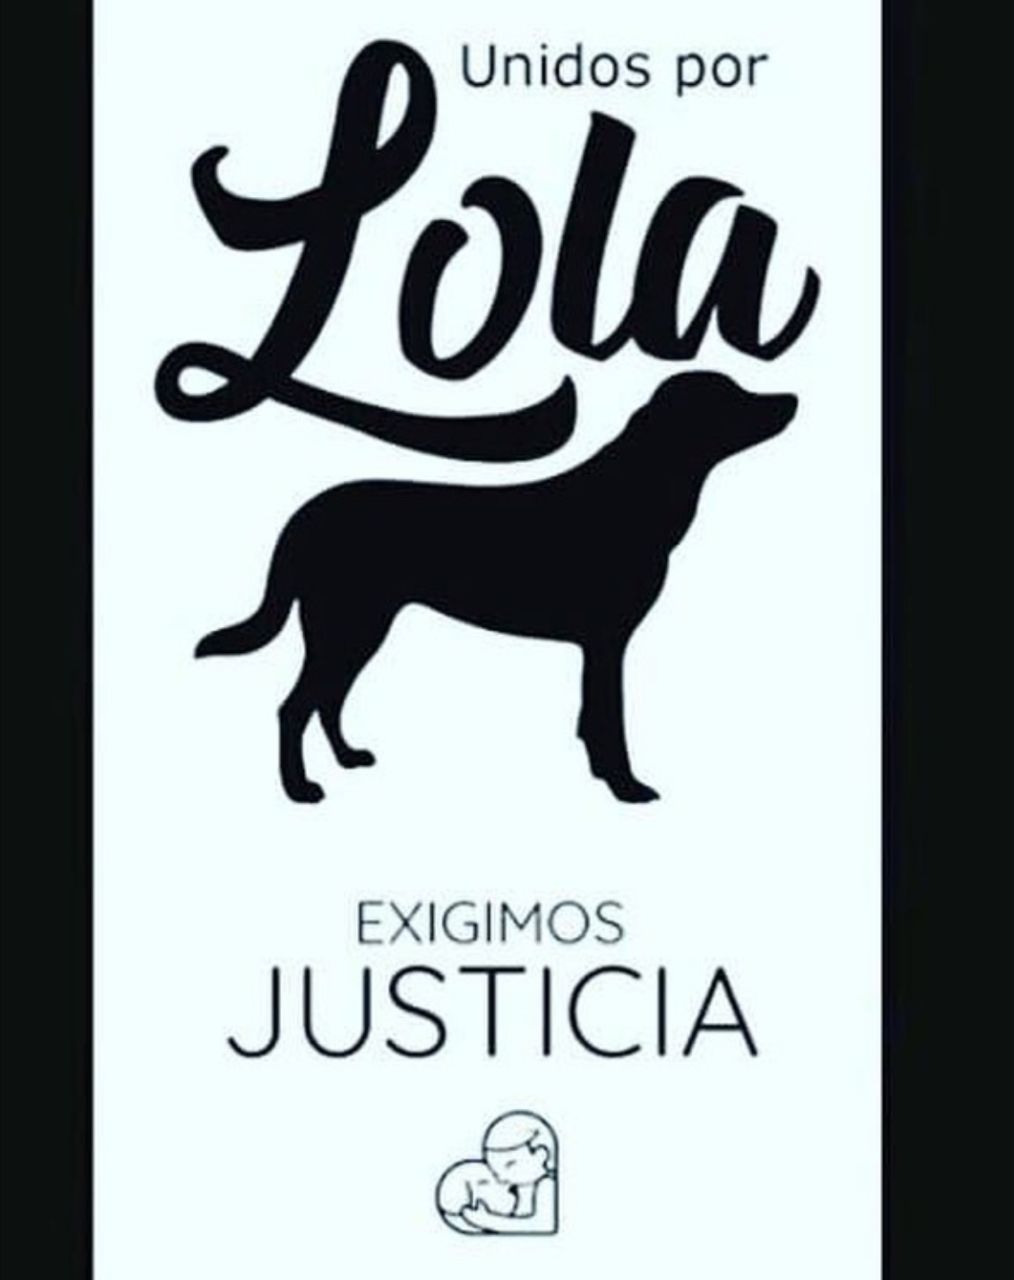 PGR apodera Fiscalía de Santiago investigar versión en redes de que mujer mató perra “Lola"